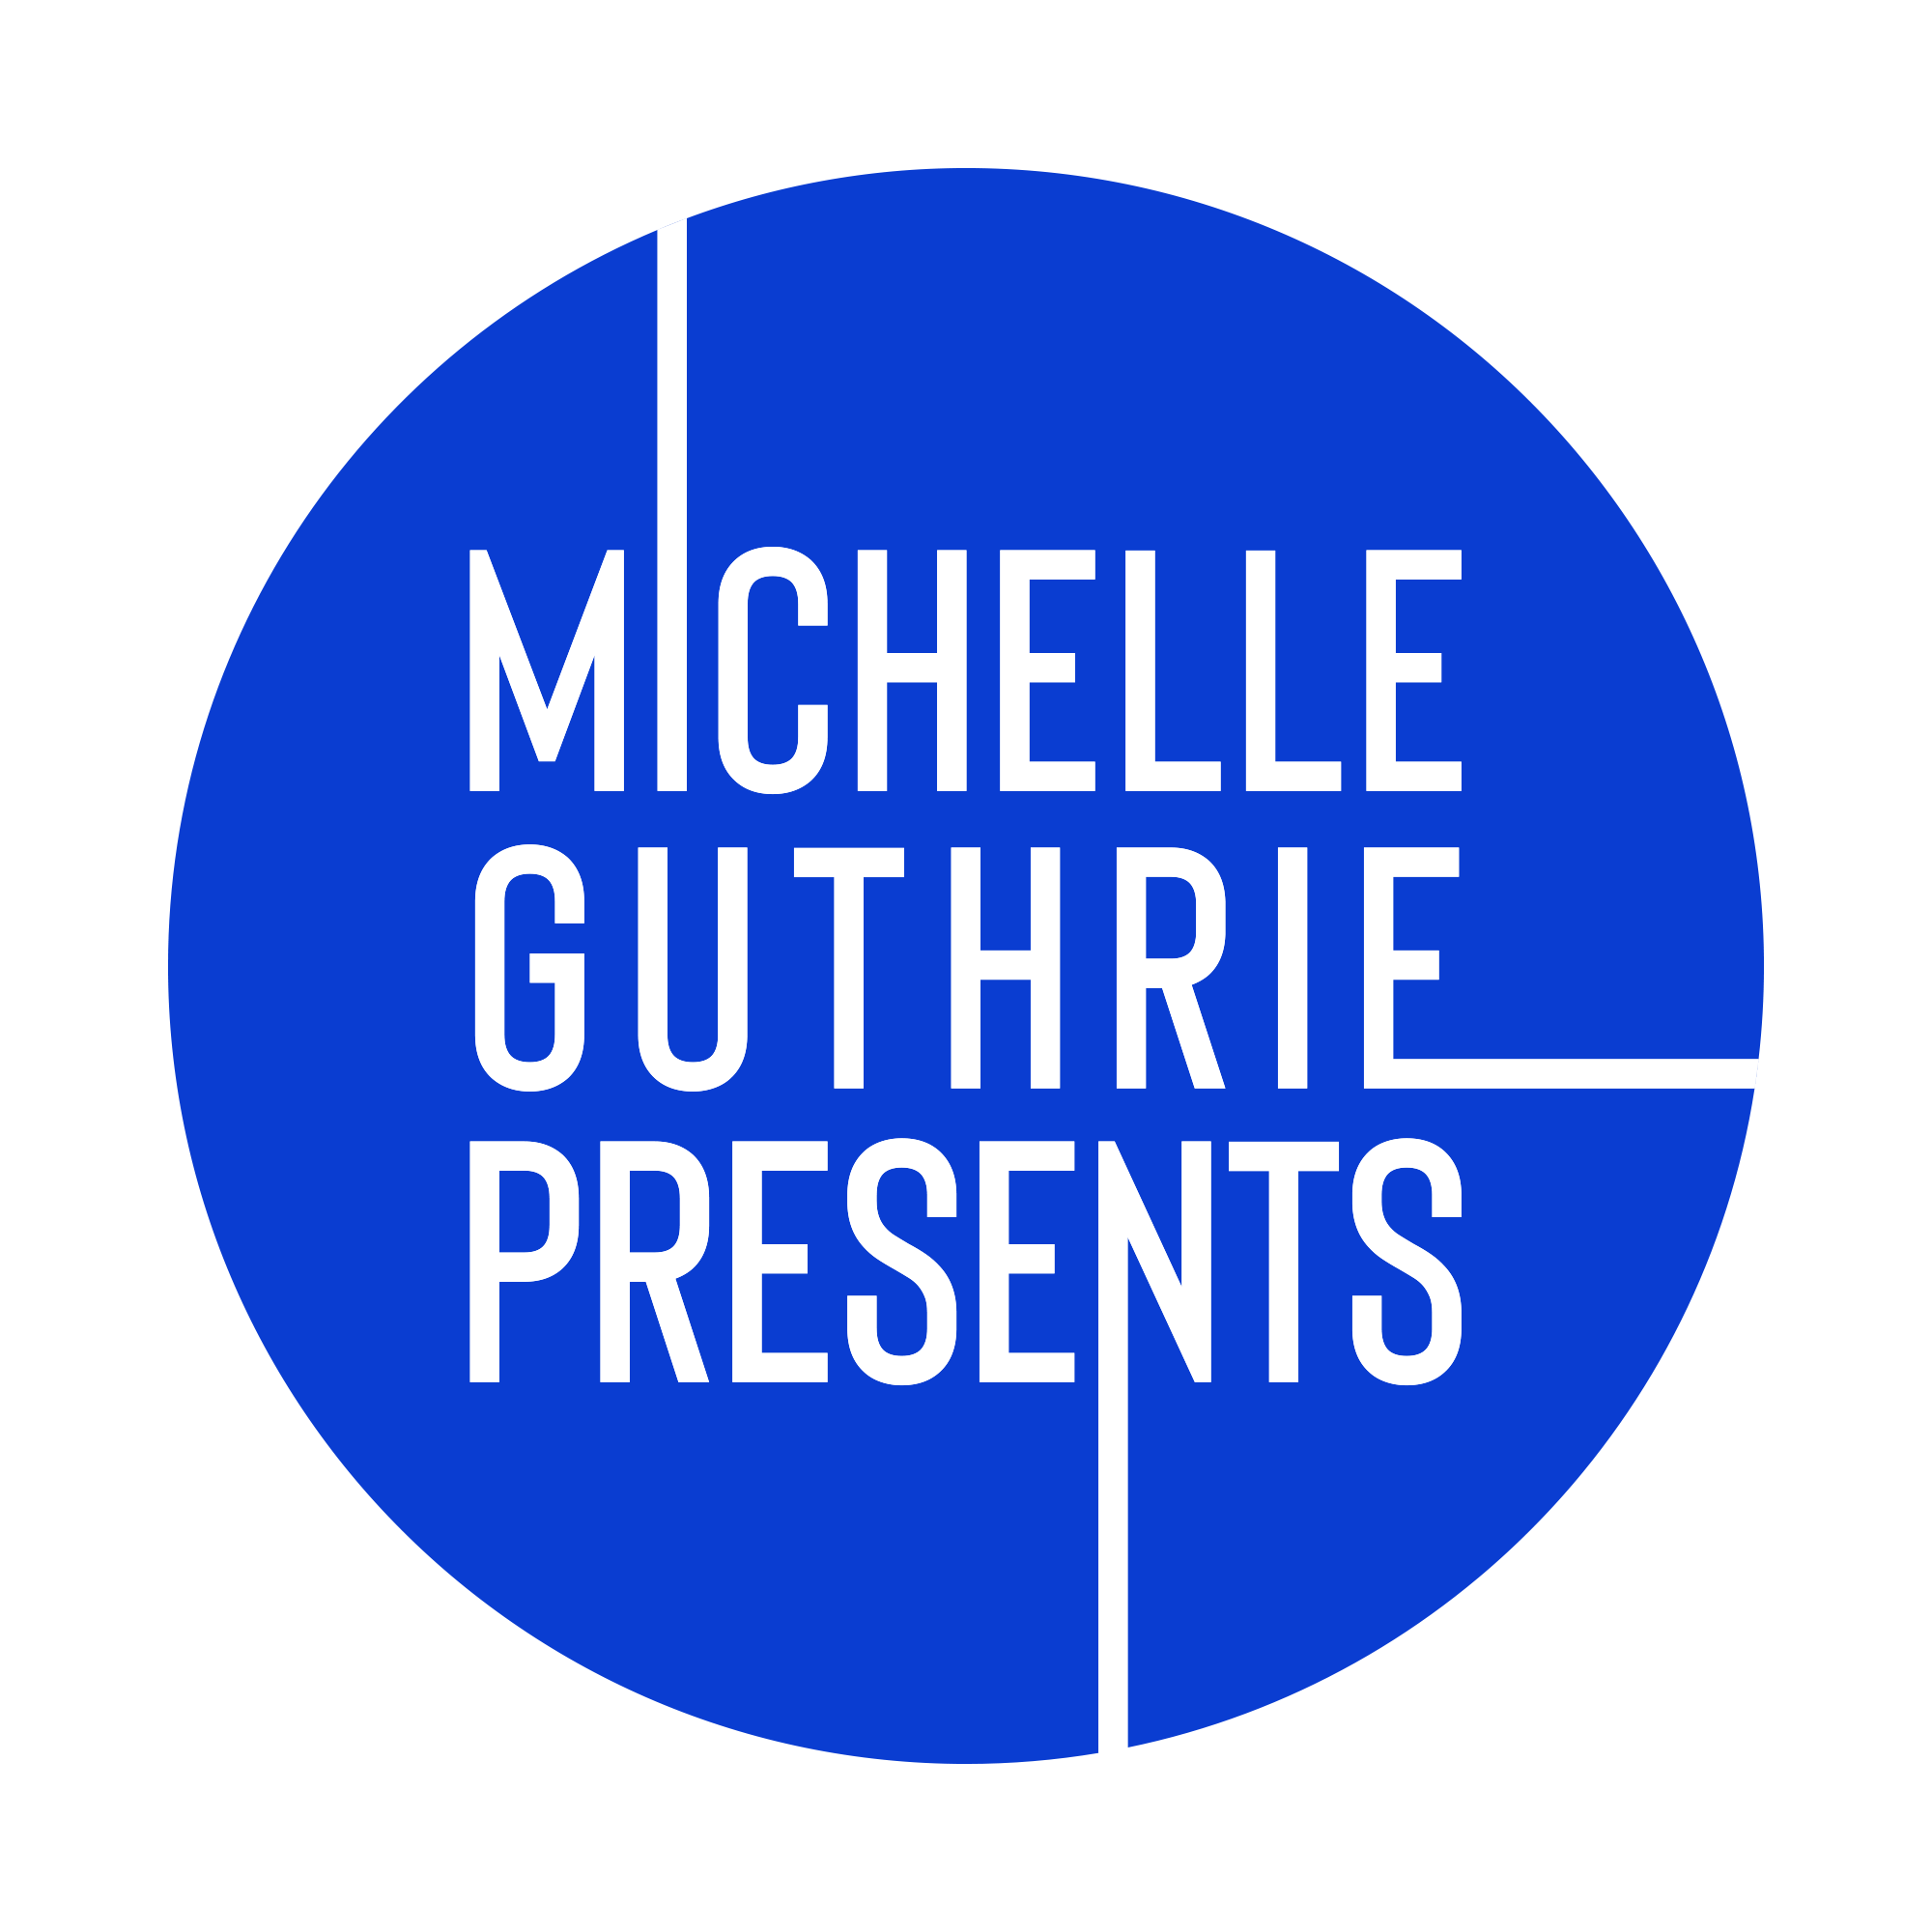 Michelle Guthrie Presents